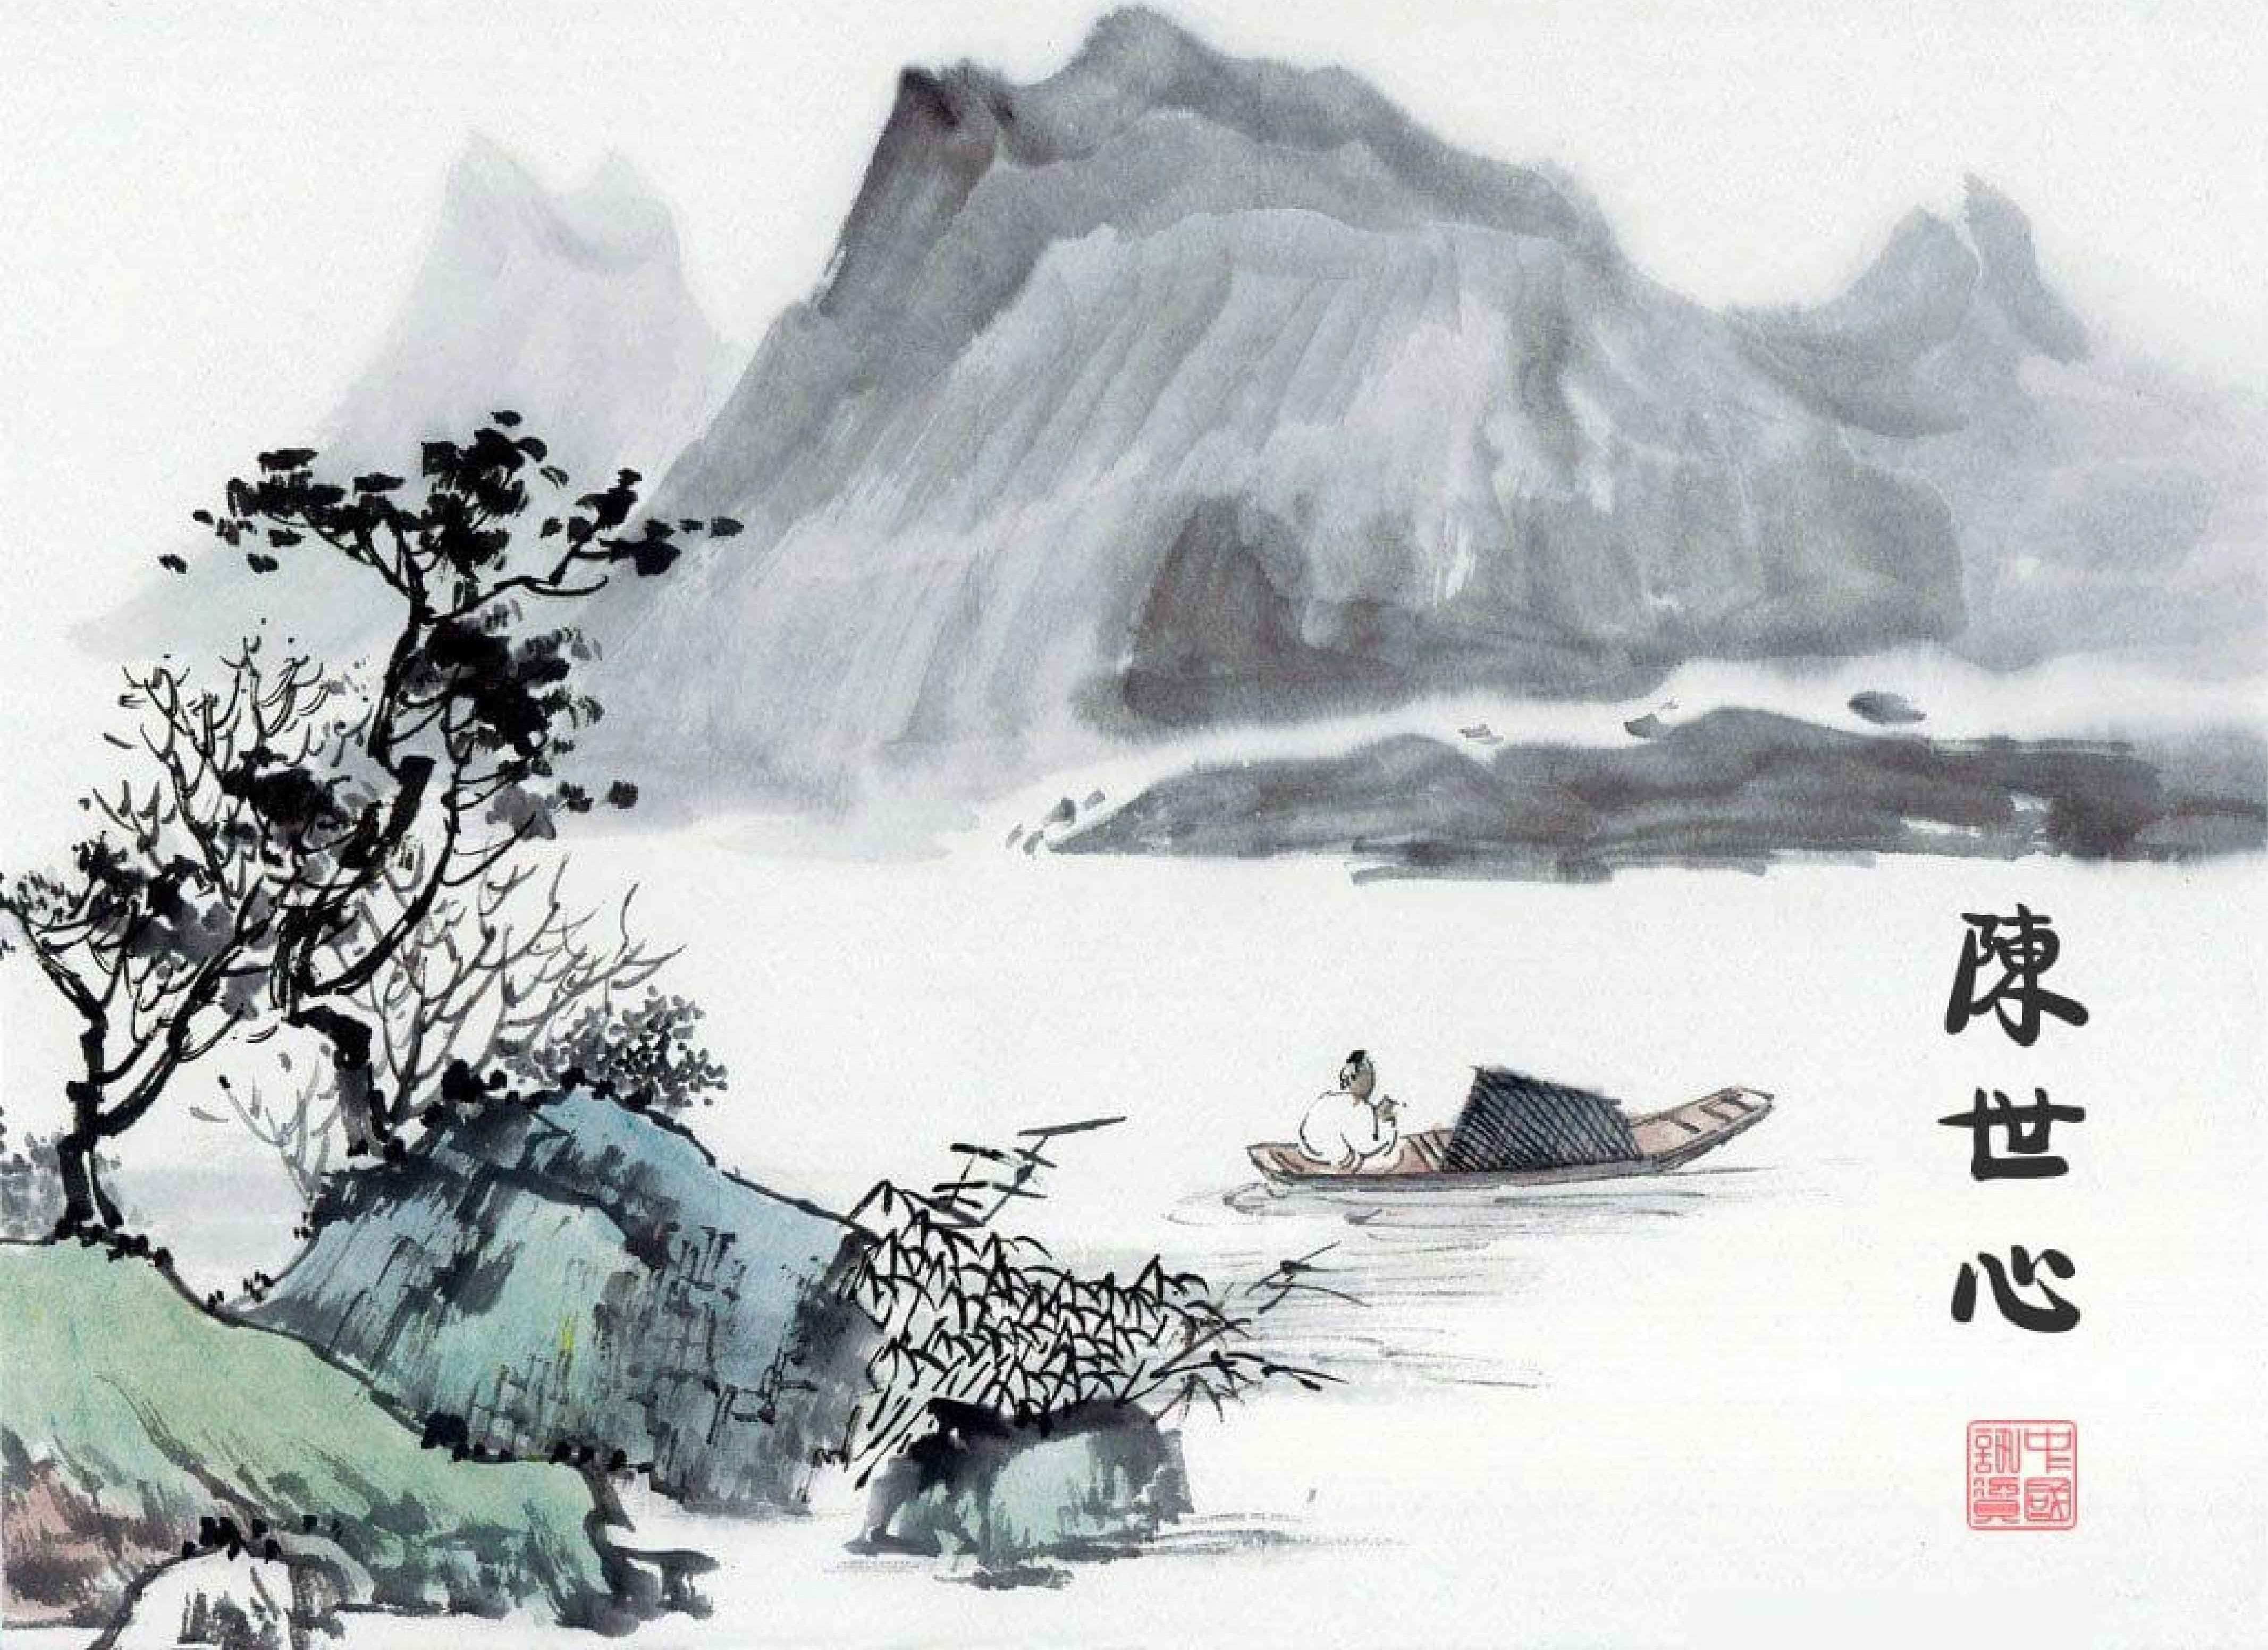 Tranh vẽ mực Trung Quốc